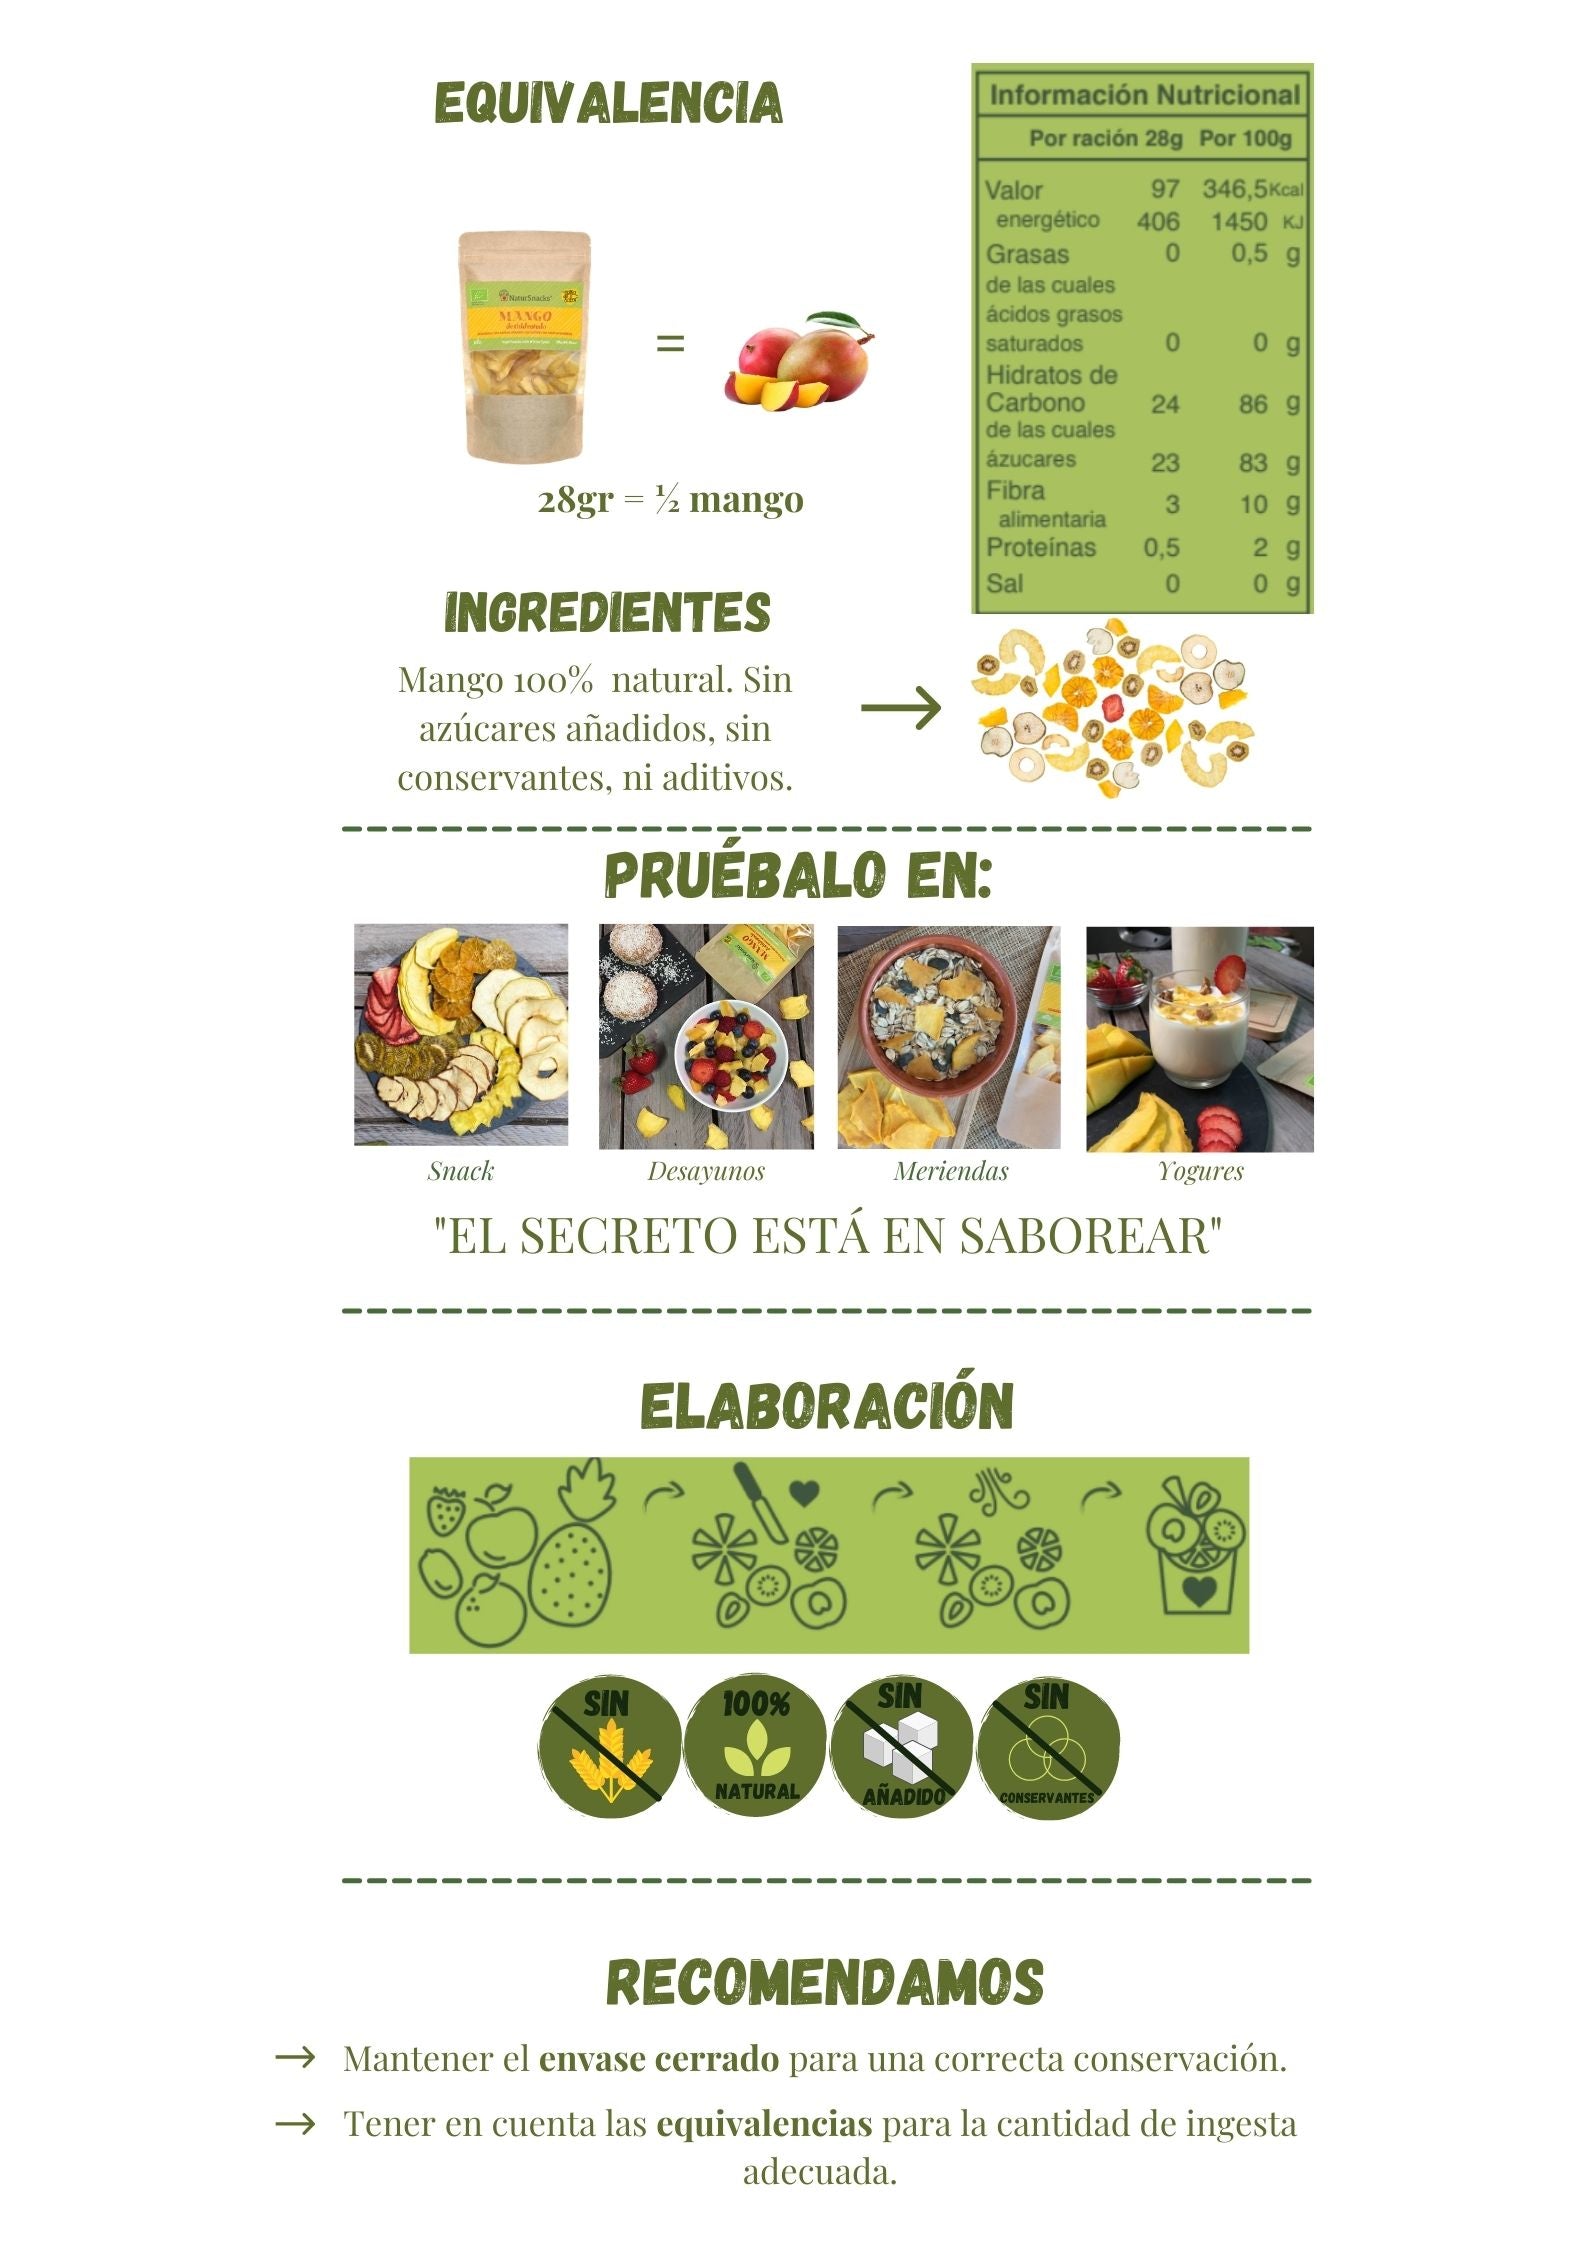 Equivalencia mango fresco y mango deshidratado bio , tabla de información nutricional. Ingredientes mango 100% natural sin azúcares añadidos, conservantes ni aditivos. Pruébalo en diferentes recetas y recuerda que el secreto está en saborear. 